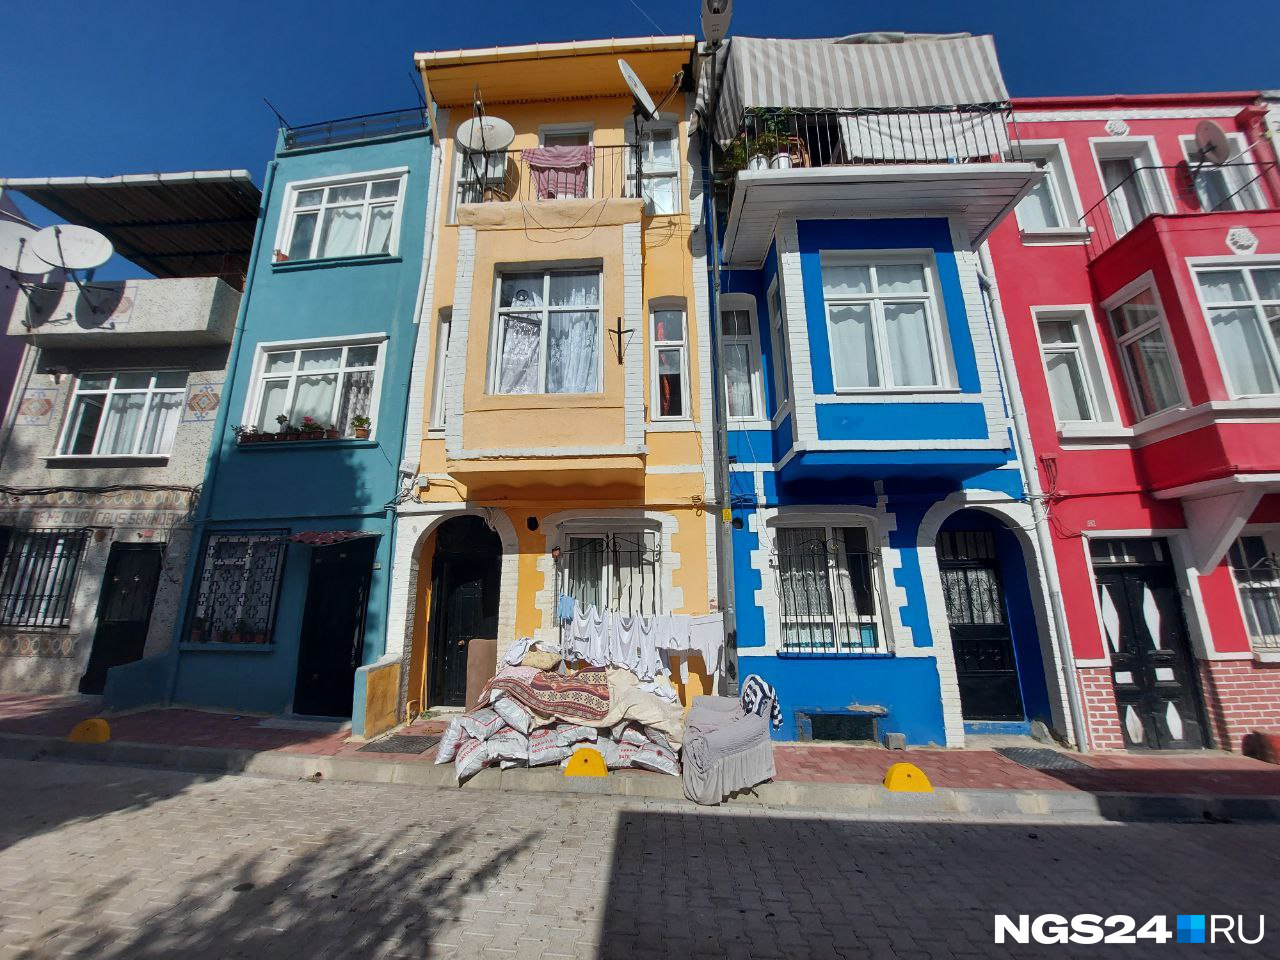 В некоторых районах можно увидеть яркие разноцветные домики